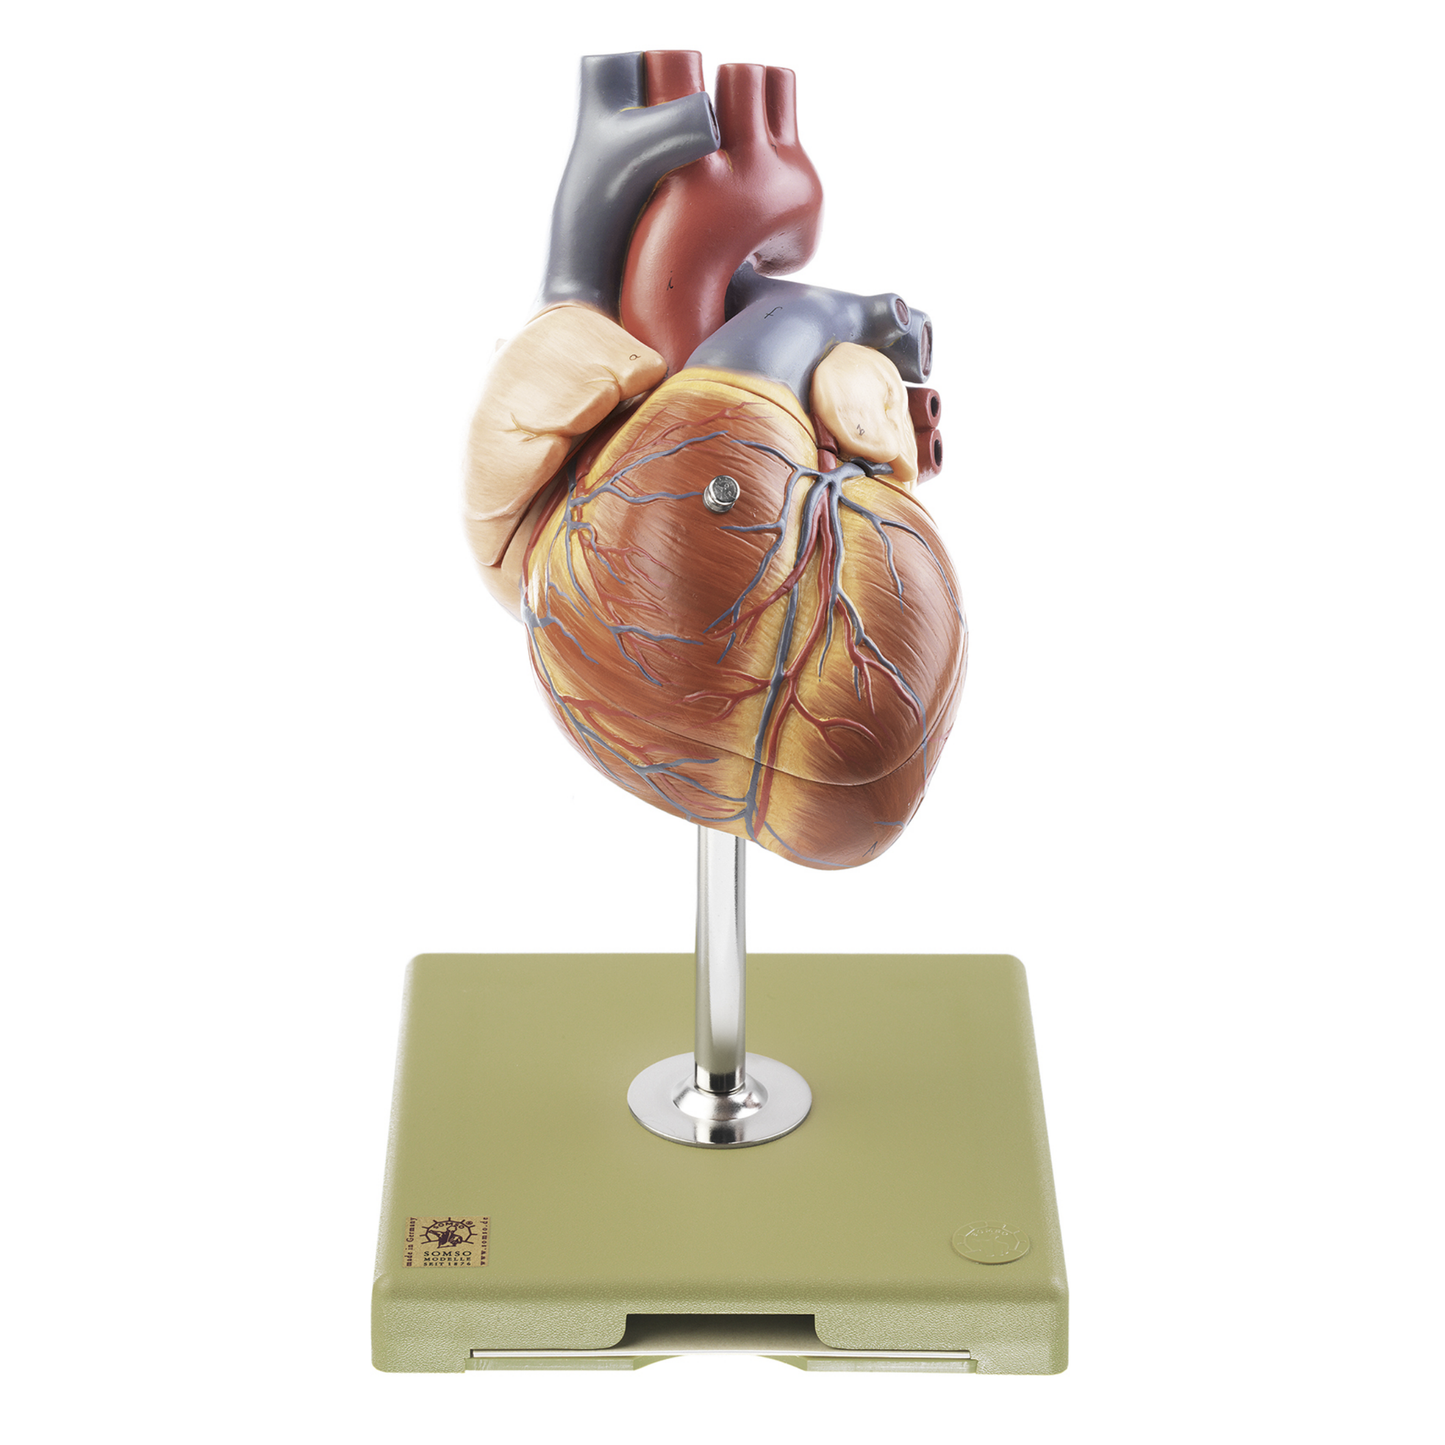 FÖRSTORAD och mycket detaljerad hjärtmodell med impulsledningssystemet